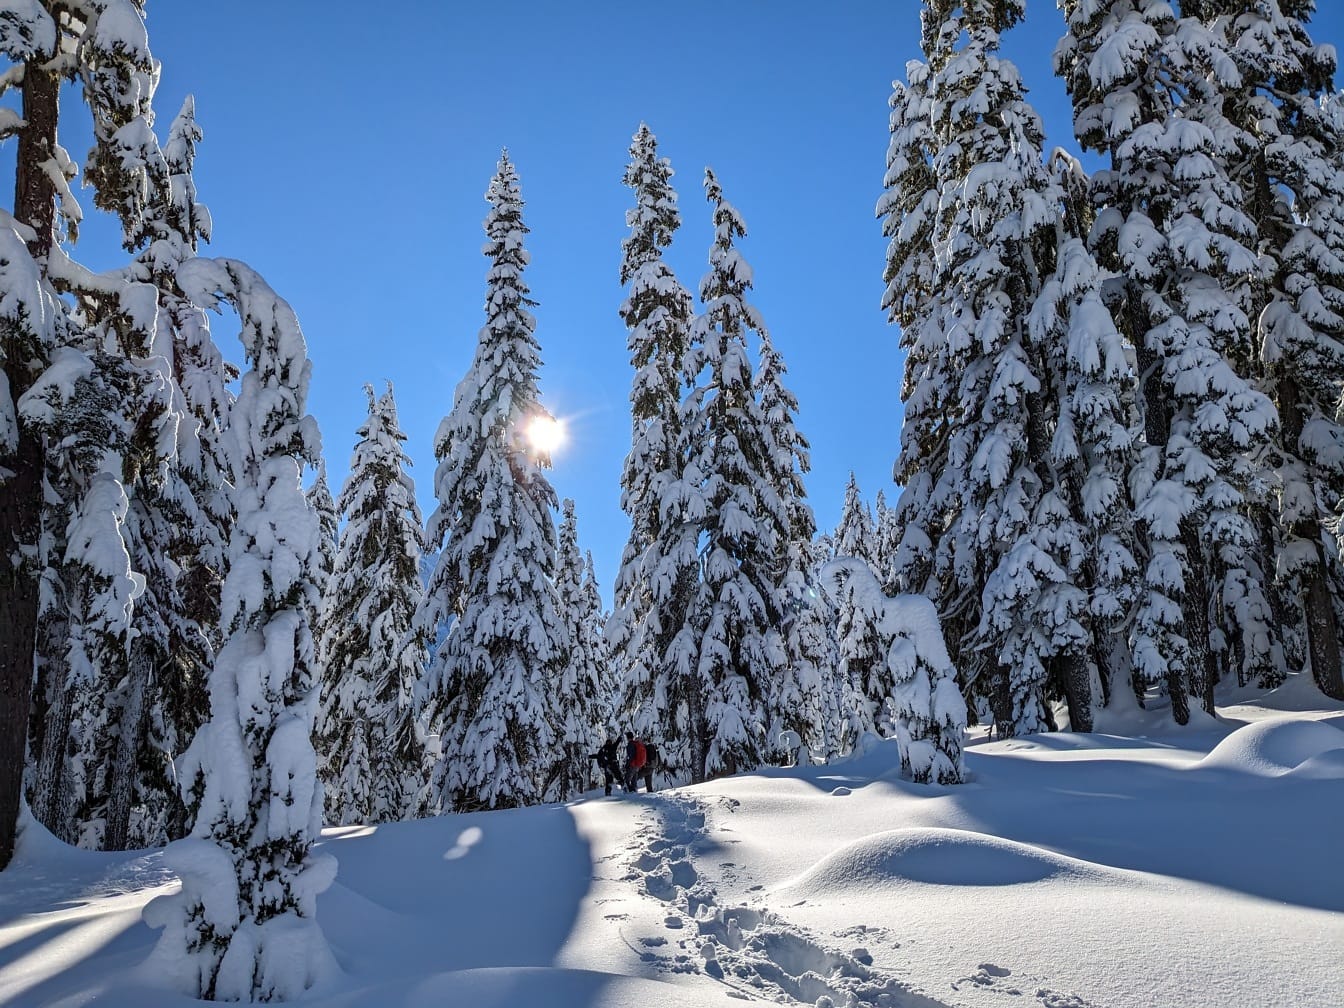 Ζευγάρι ορειβατών που περπατούν μέσα από βαθύ χιόνι σε χιονισμένο δάσος